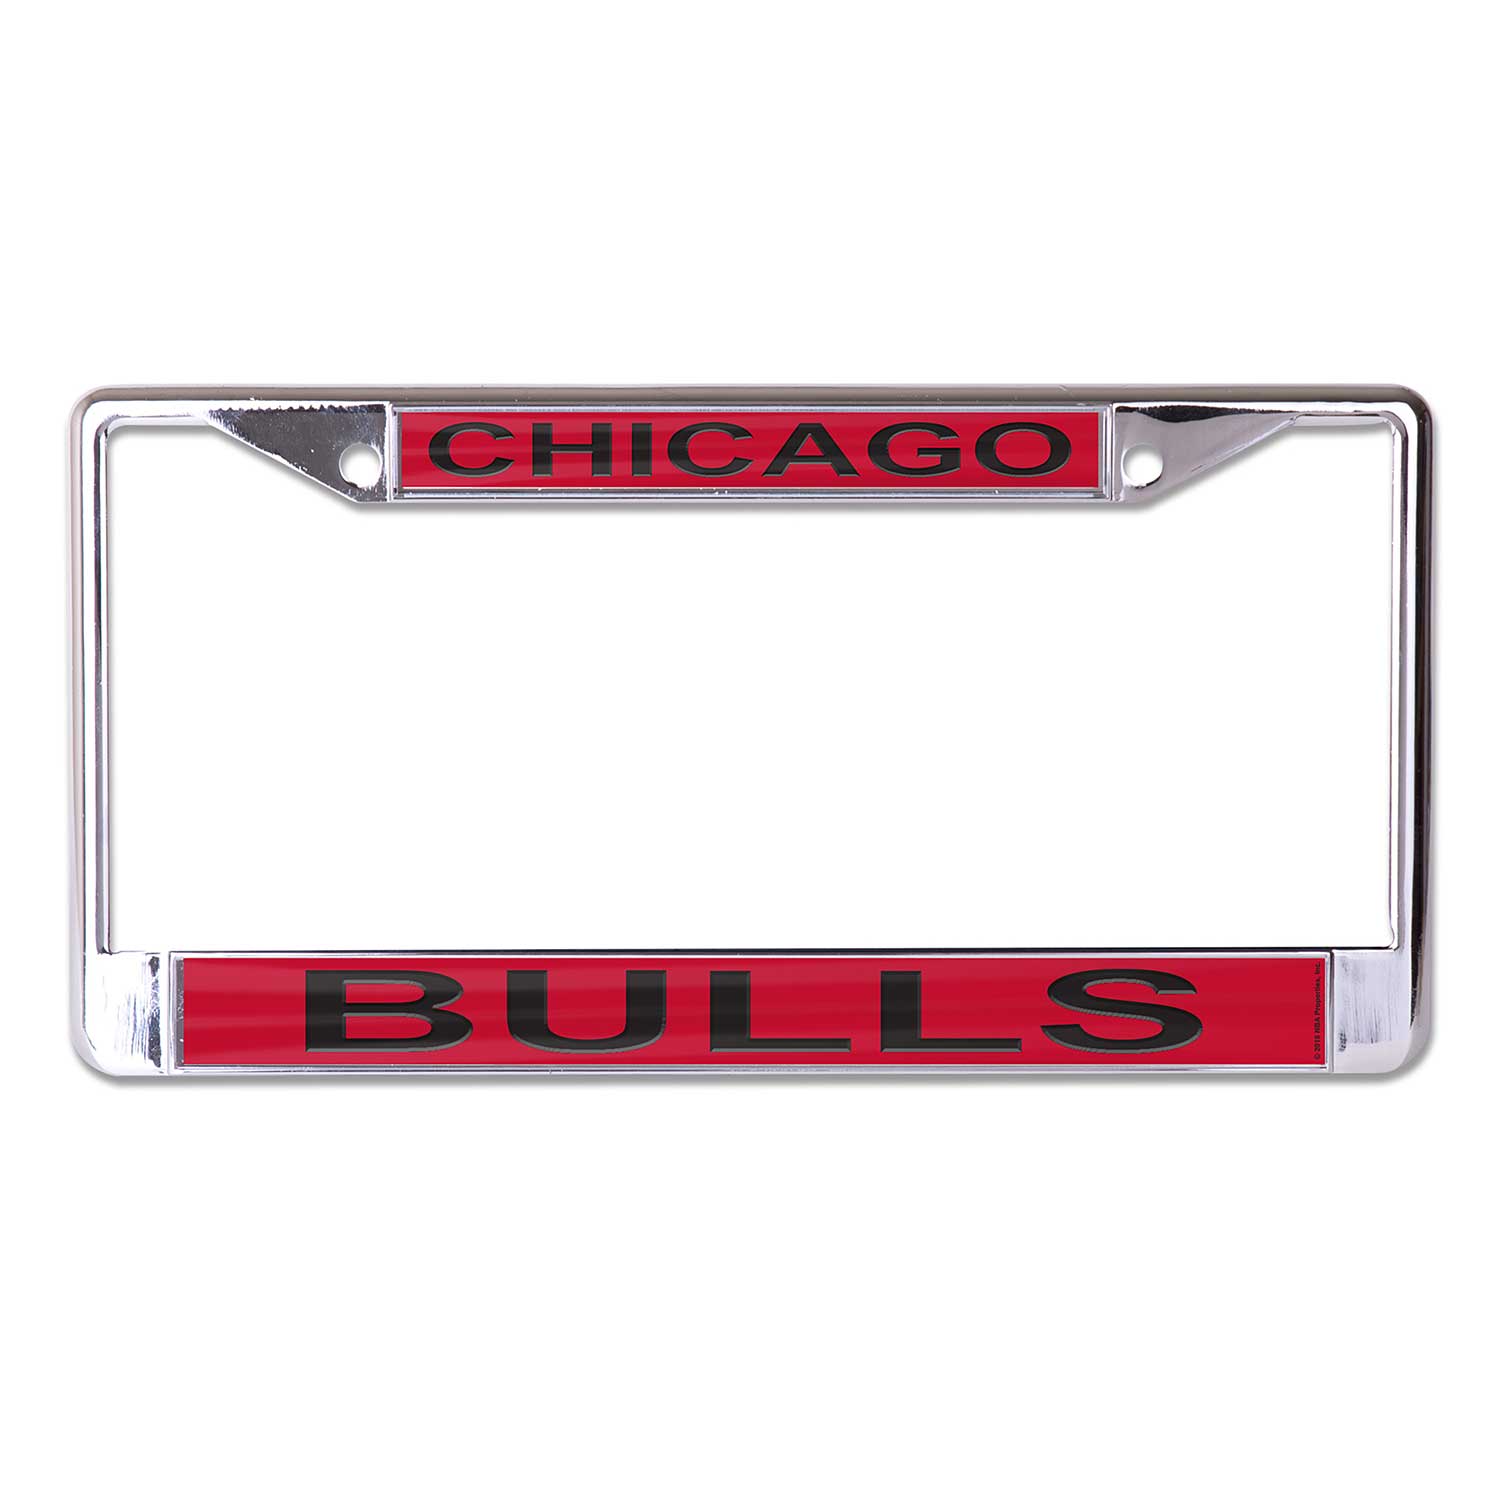 Chicago Bulls Gear, Bulls WinCraft Merchandise, Store, Chicago Bulls Apparel